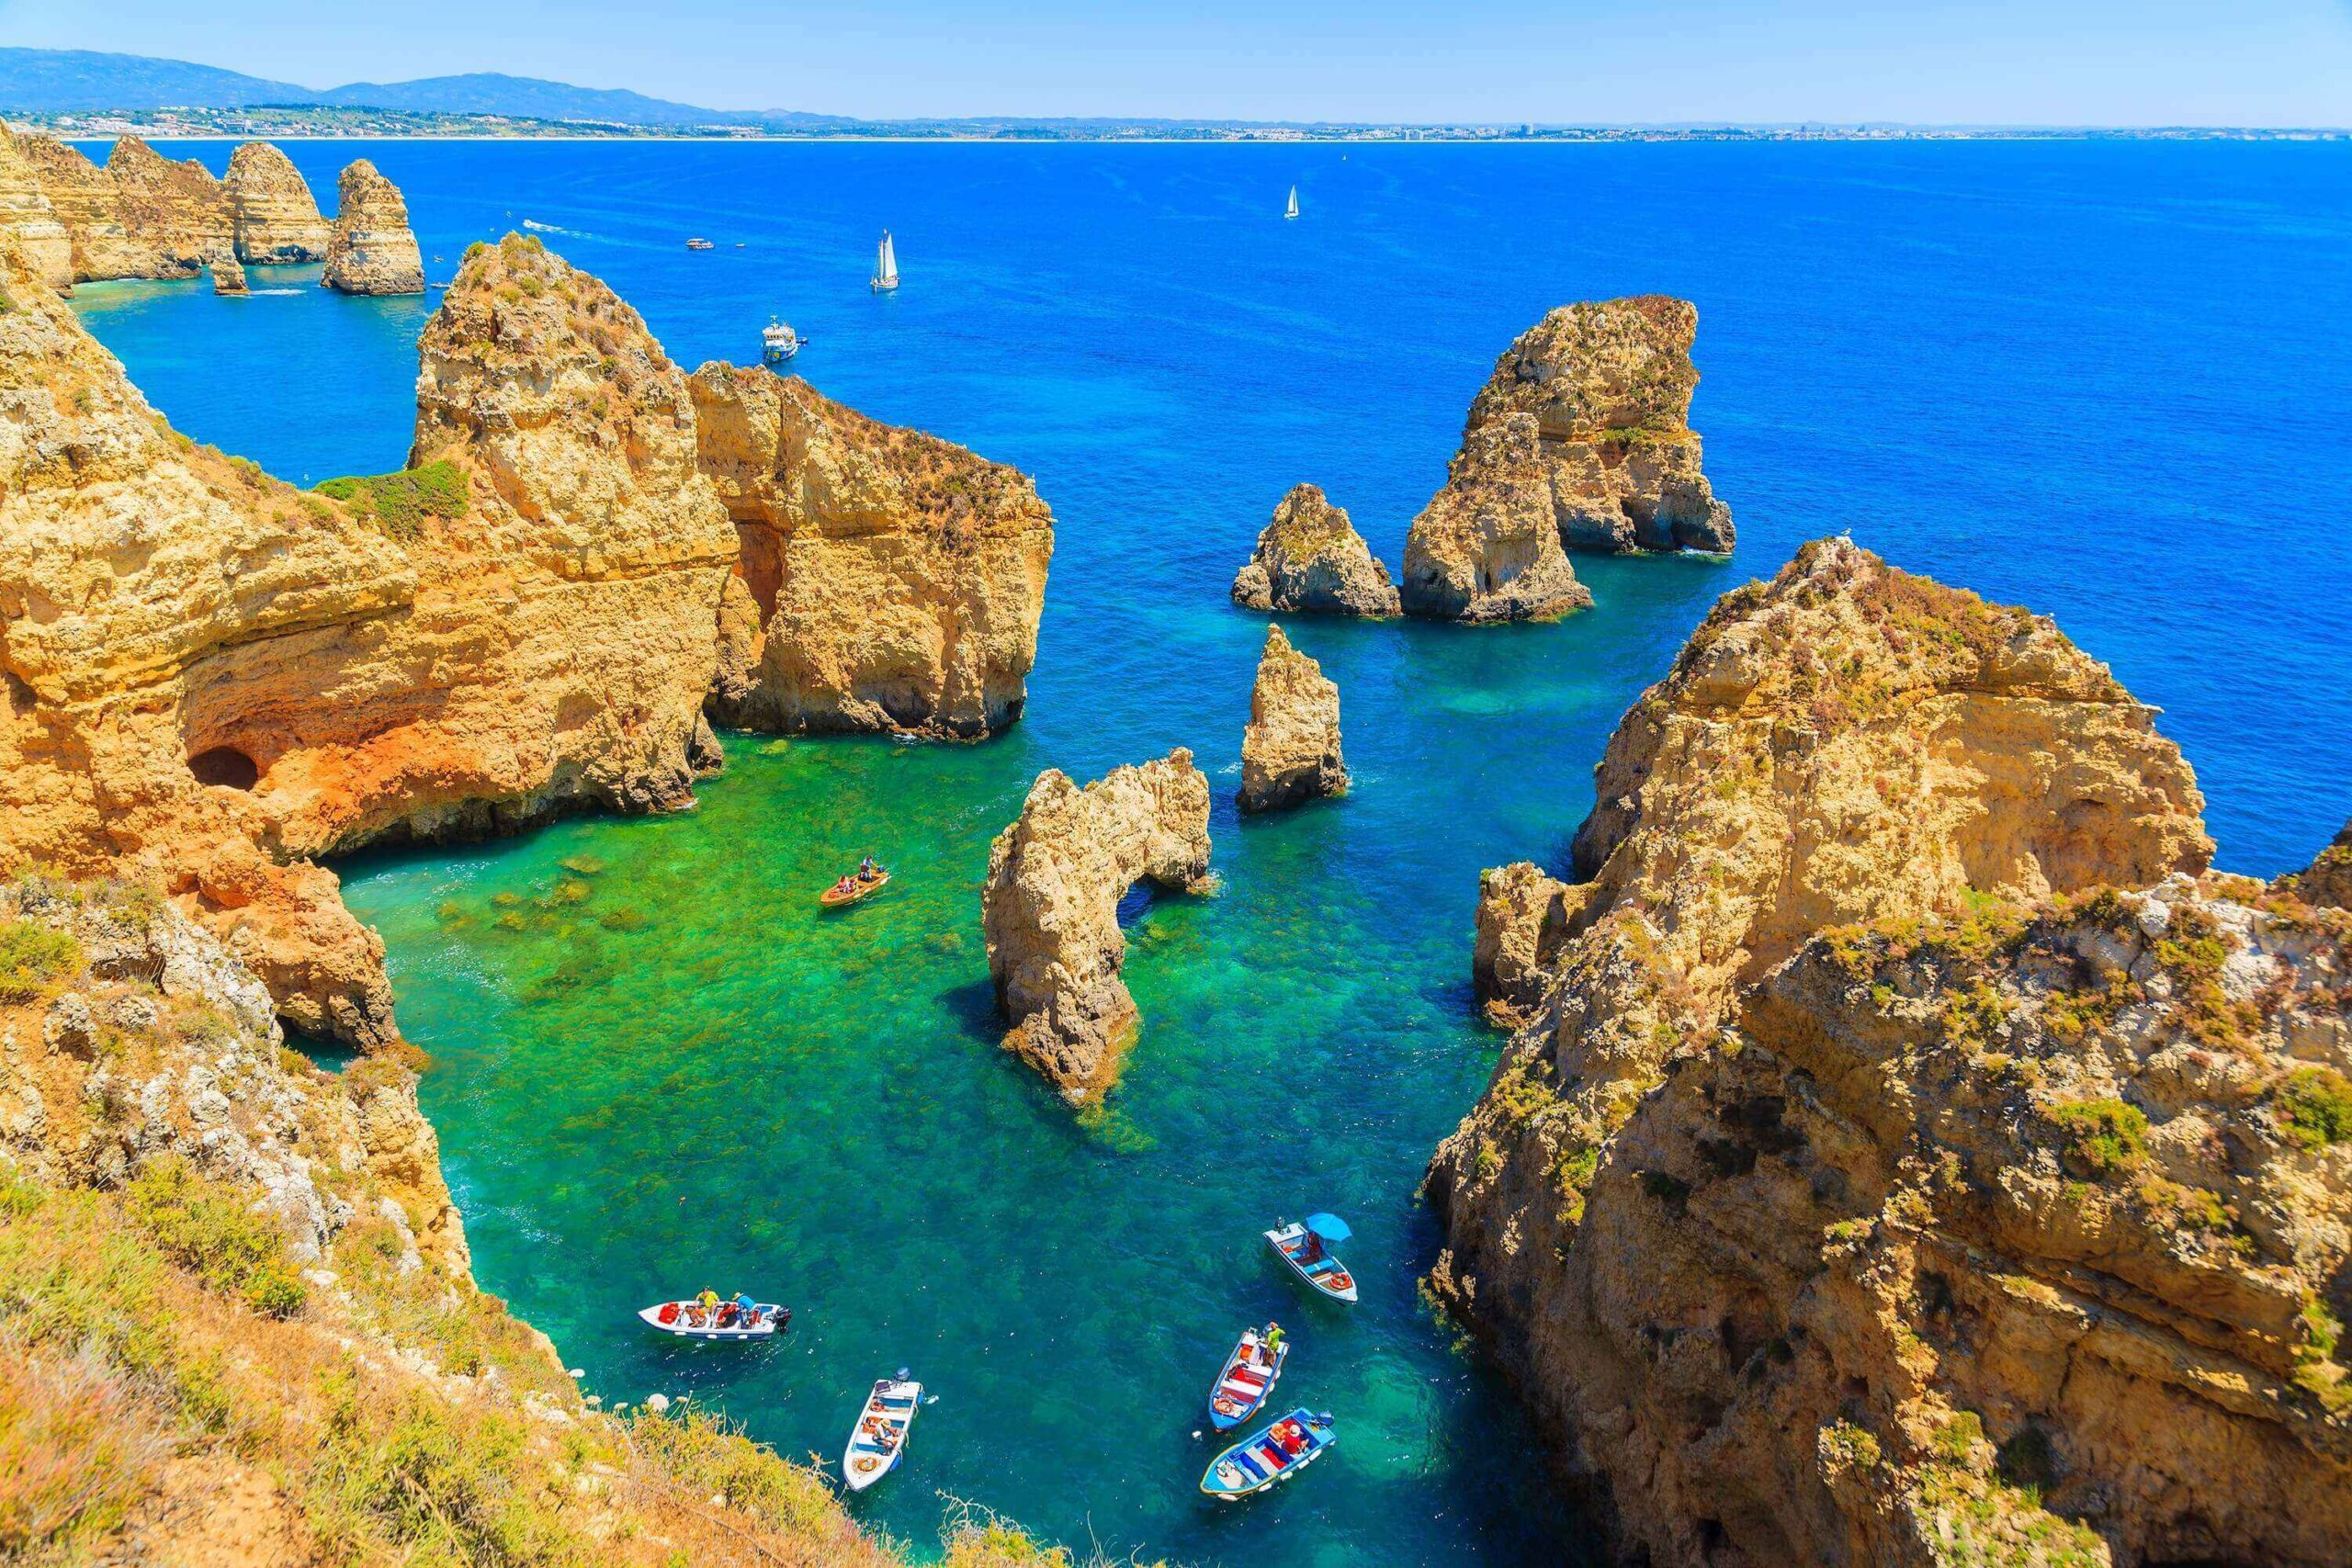 Vacanta in minunatul Algarve, Portugalia – 205 euro (zbor + cazare) – cunoscut pentru plaje exotice